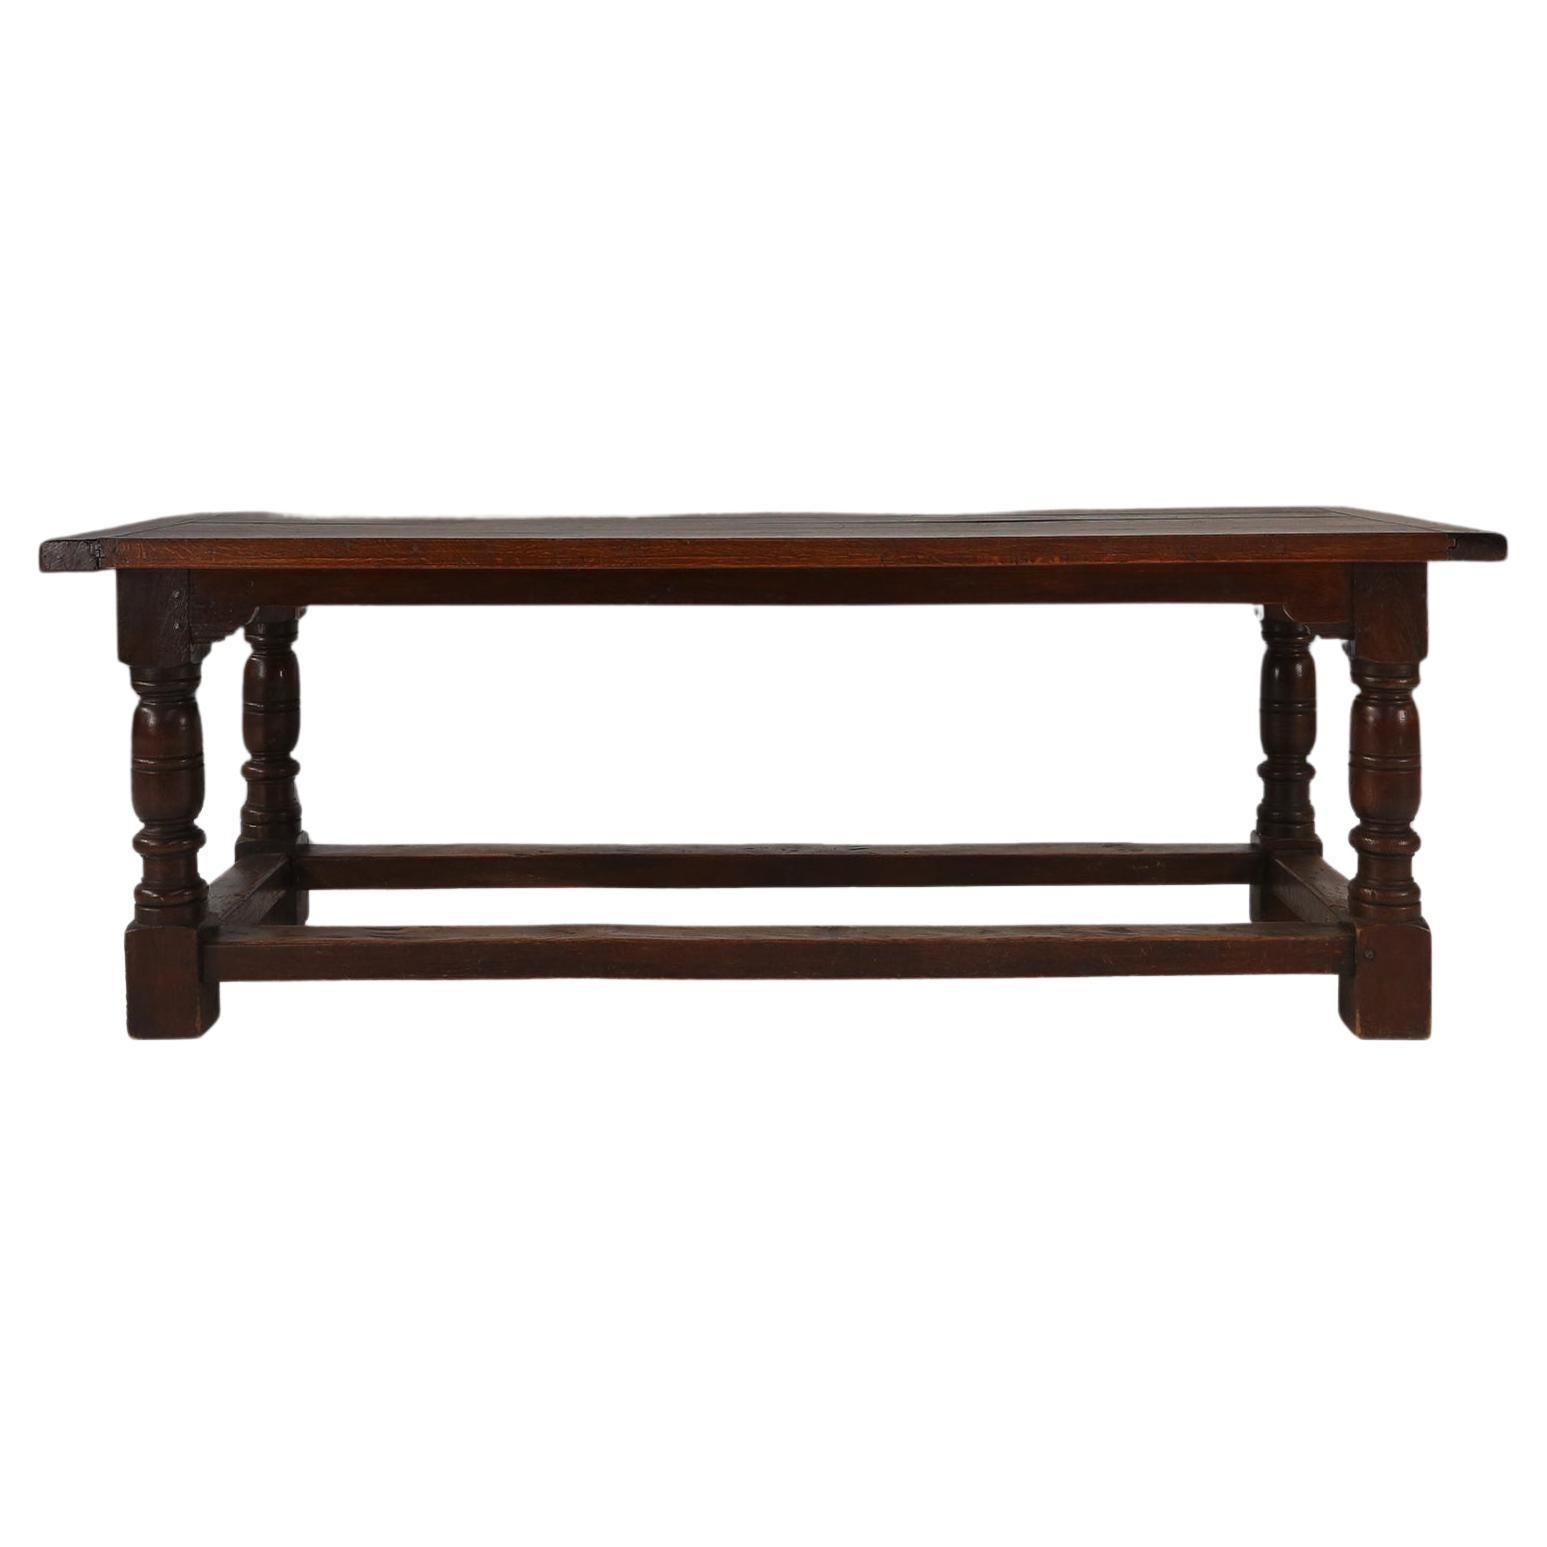 Cette table ancienne en chêne foncé rustique est le complément parfait de tout espace de vie moderne ou de tout style d'intérieur. Fabriquée avec précision et souci du détail, cette table allie fonctionnalité et beauté intemporelle. Que vous